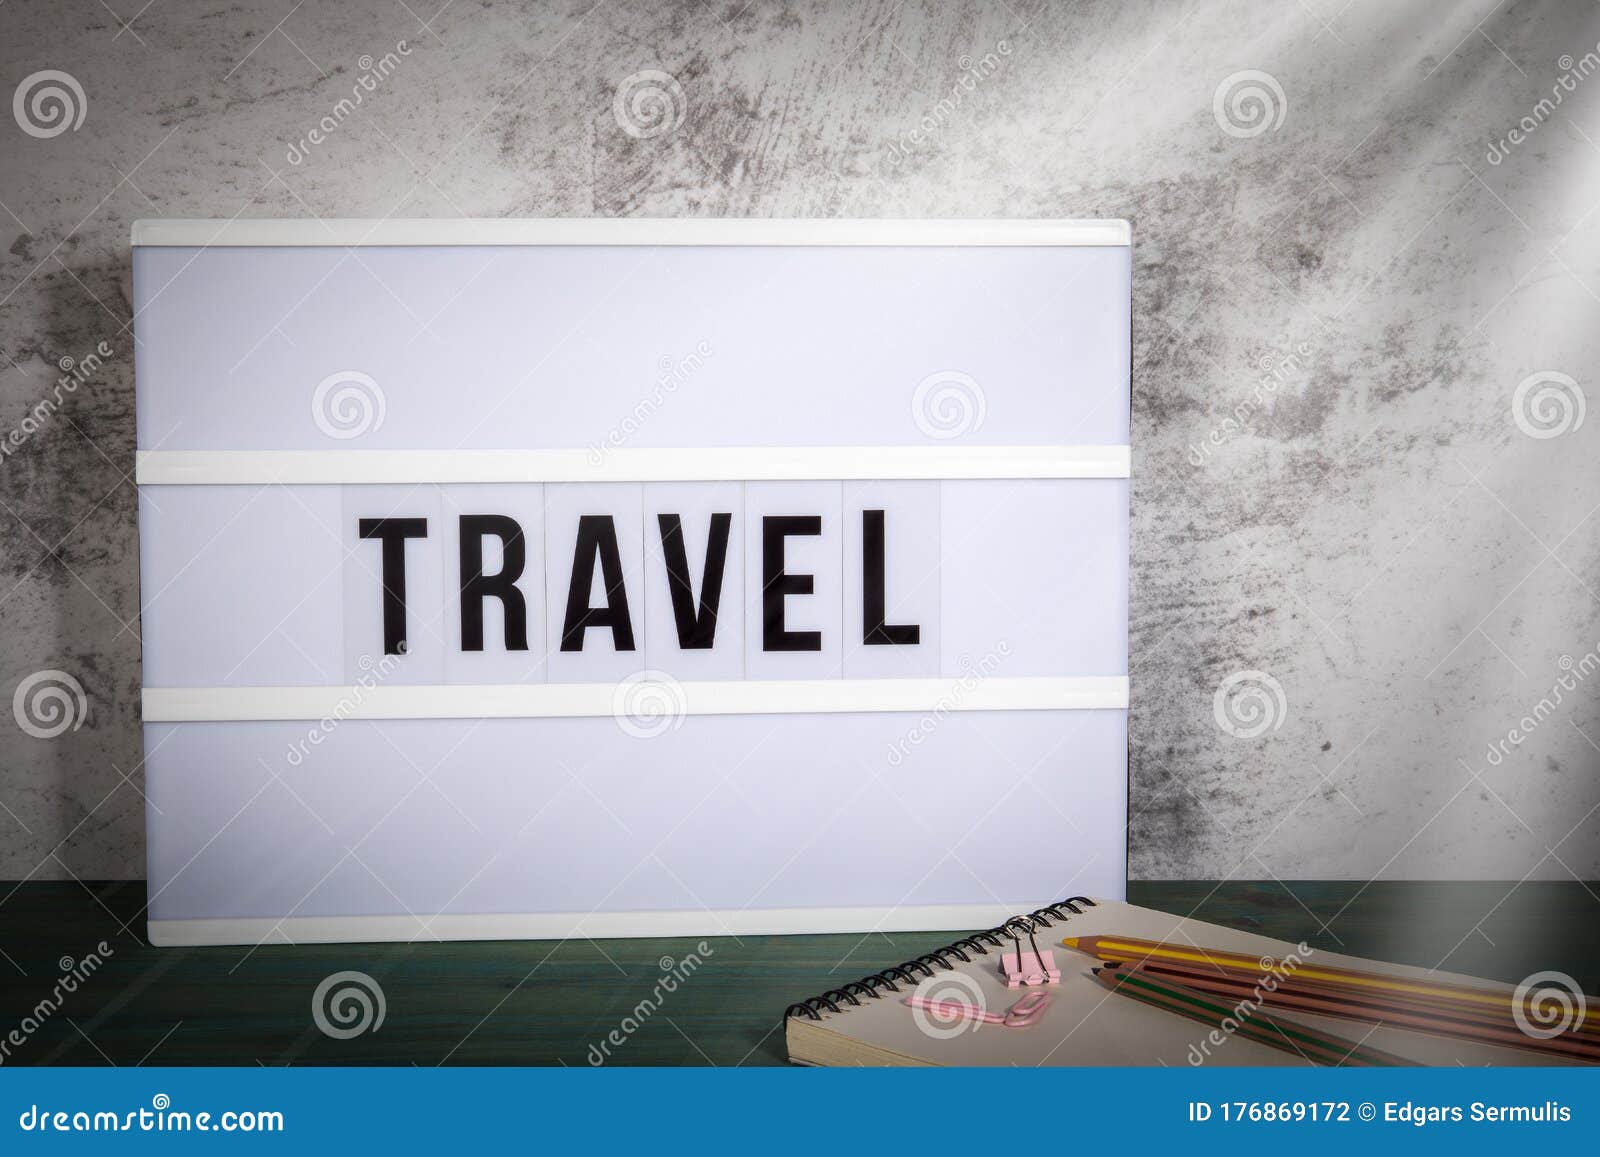 旅行 商务旅行、会议、娱乐、度假和家庭时间概念 木桌上的白色灯箱